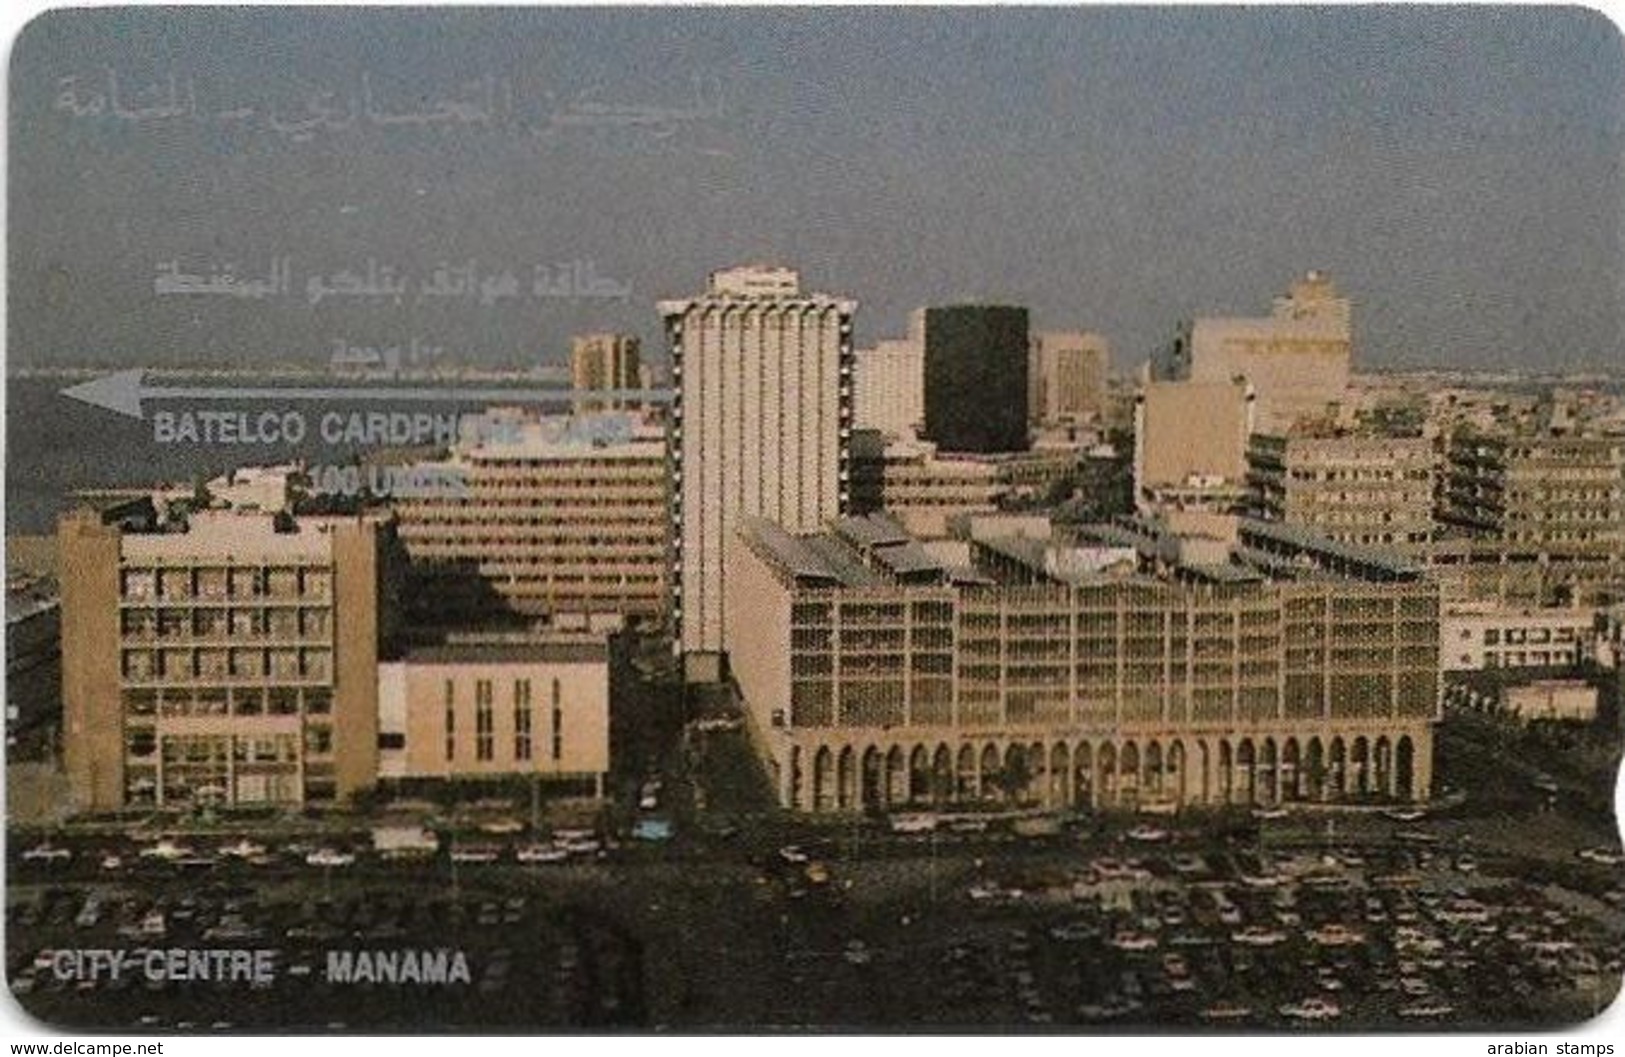 BAHRAIN MANAMA 1988 2BAHR SERIAL AT TOP USED - Baharain